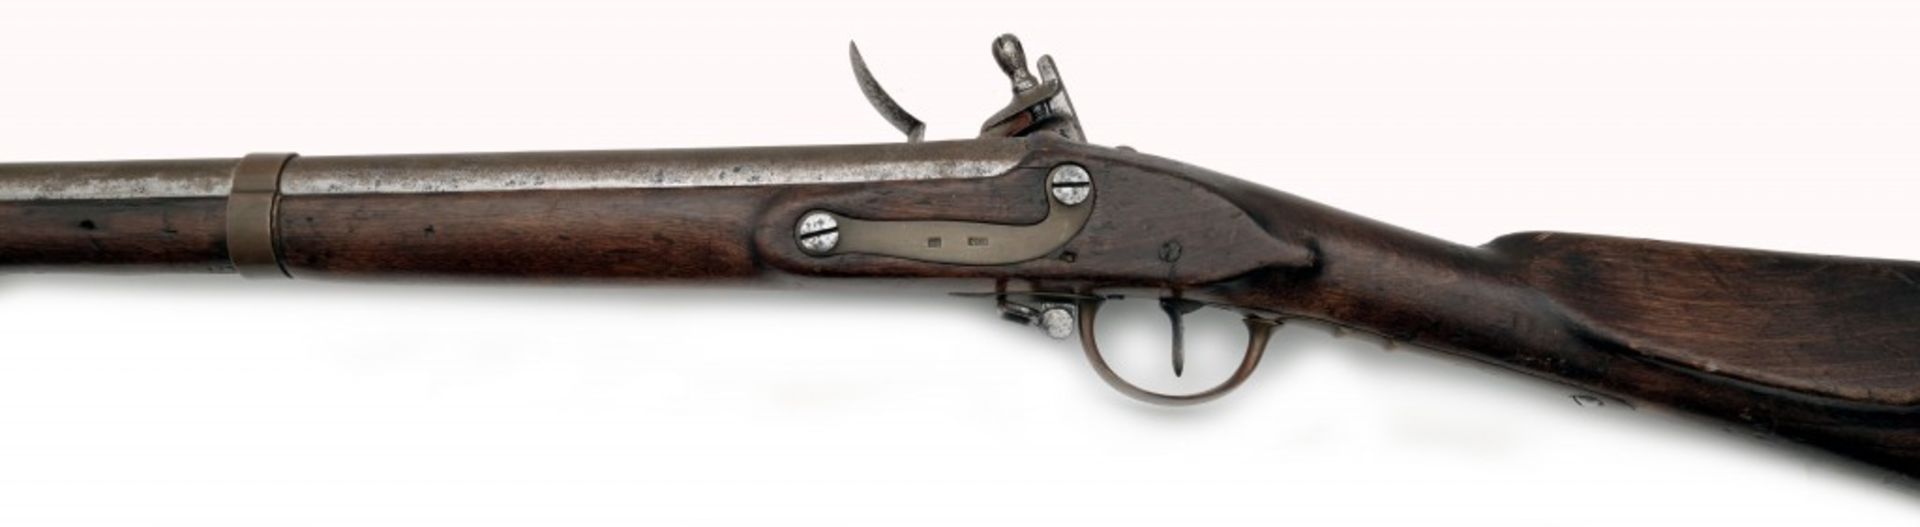 Infanteriegewehr M 1828 - Image 3 of 6